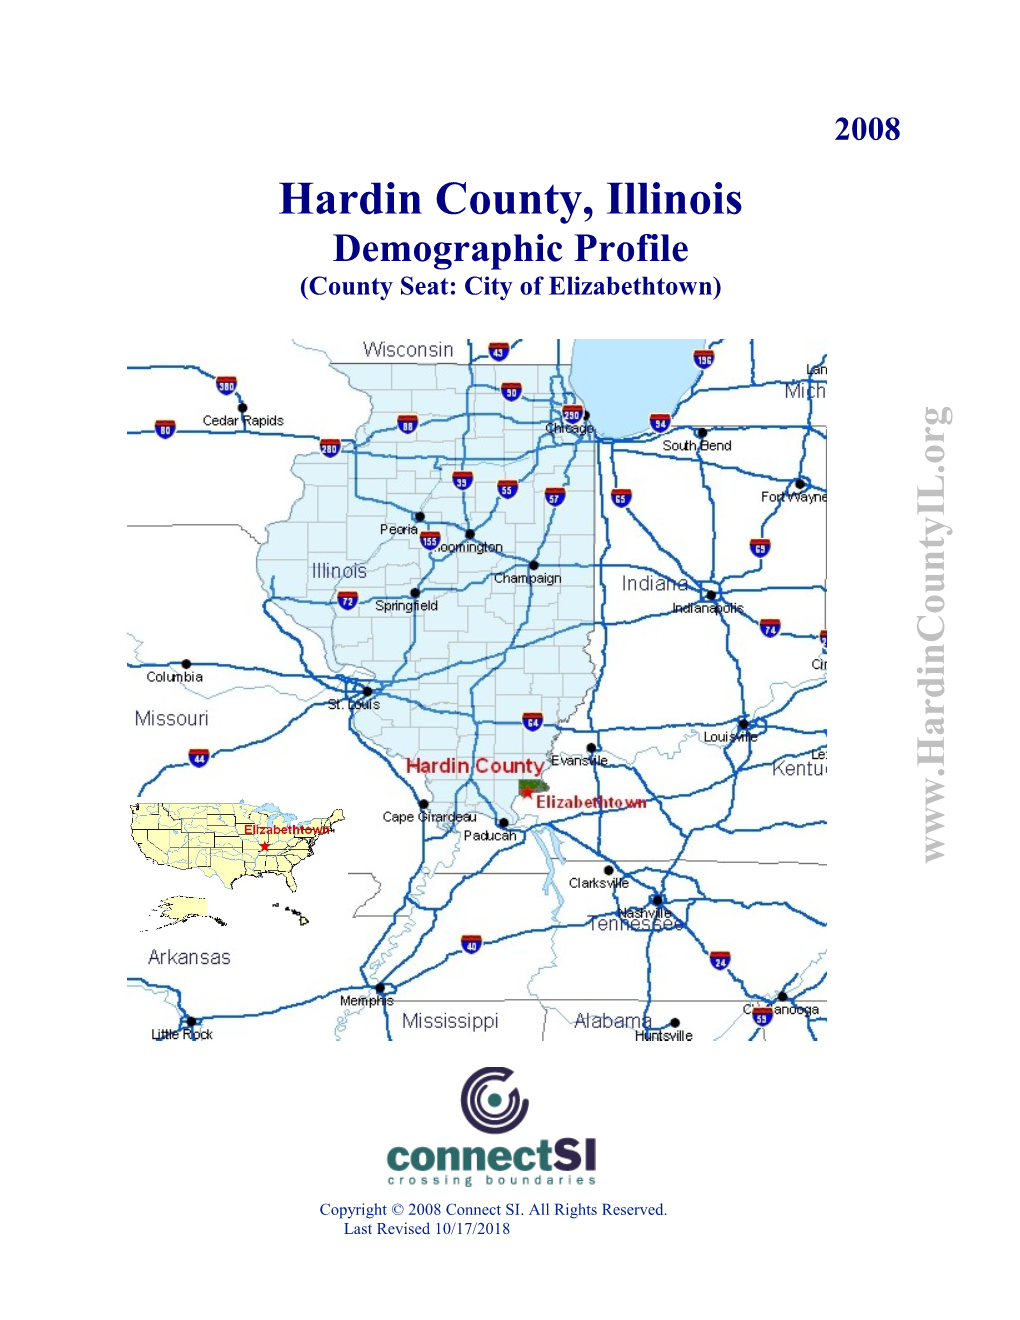 Hardin County, Illinois